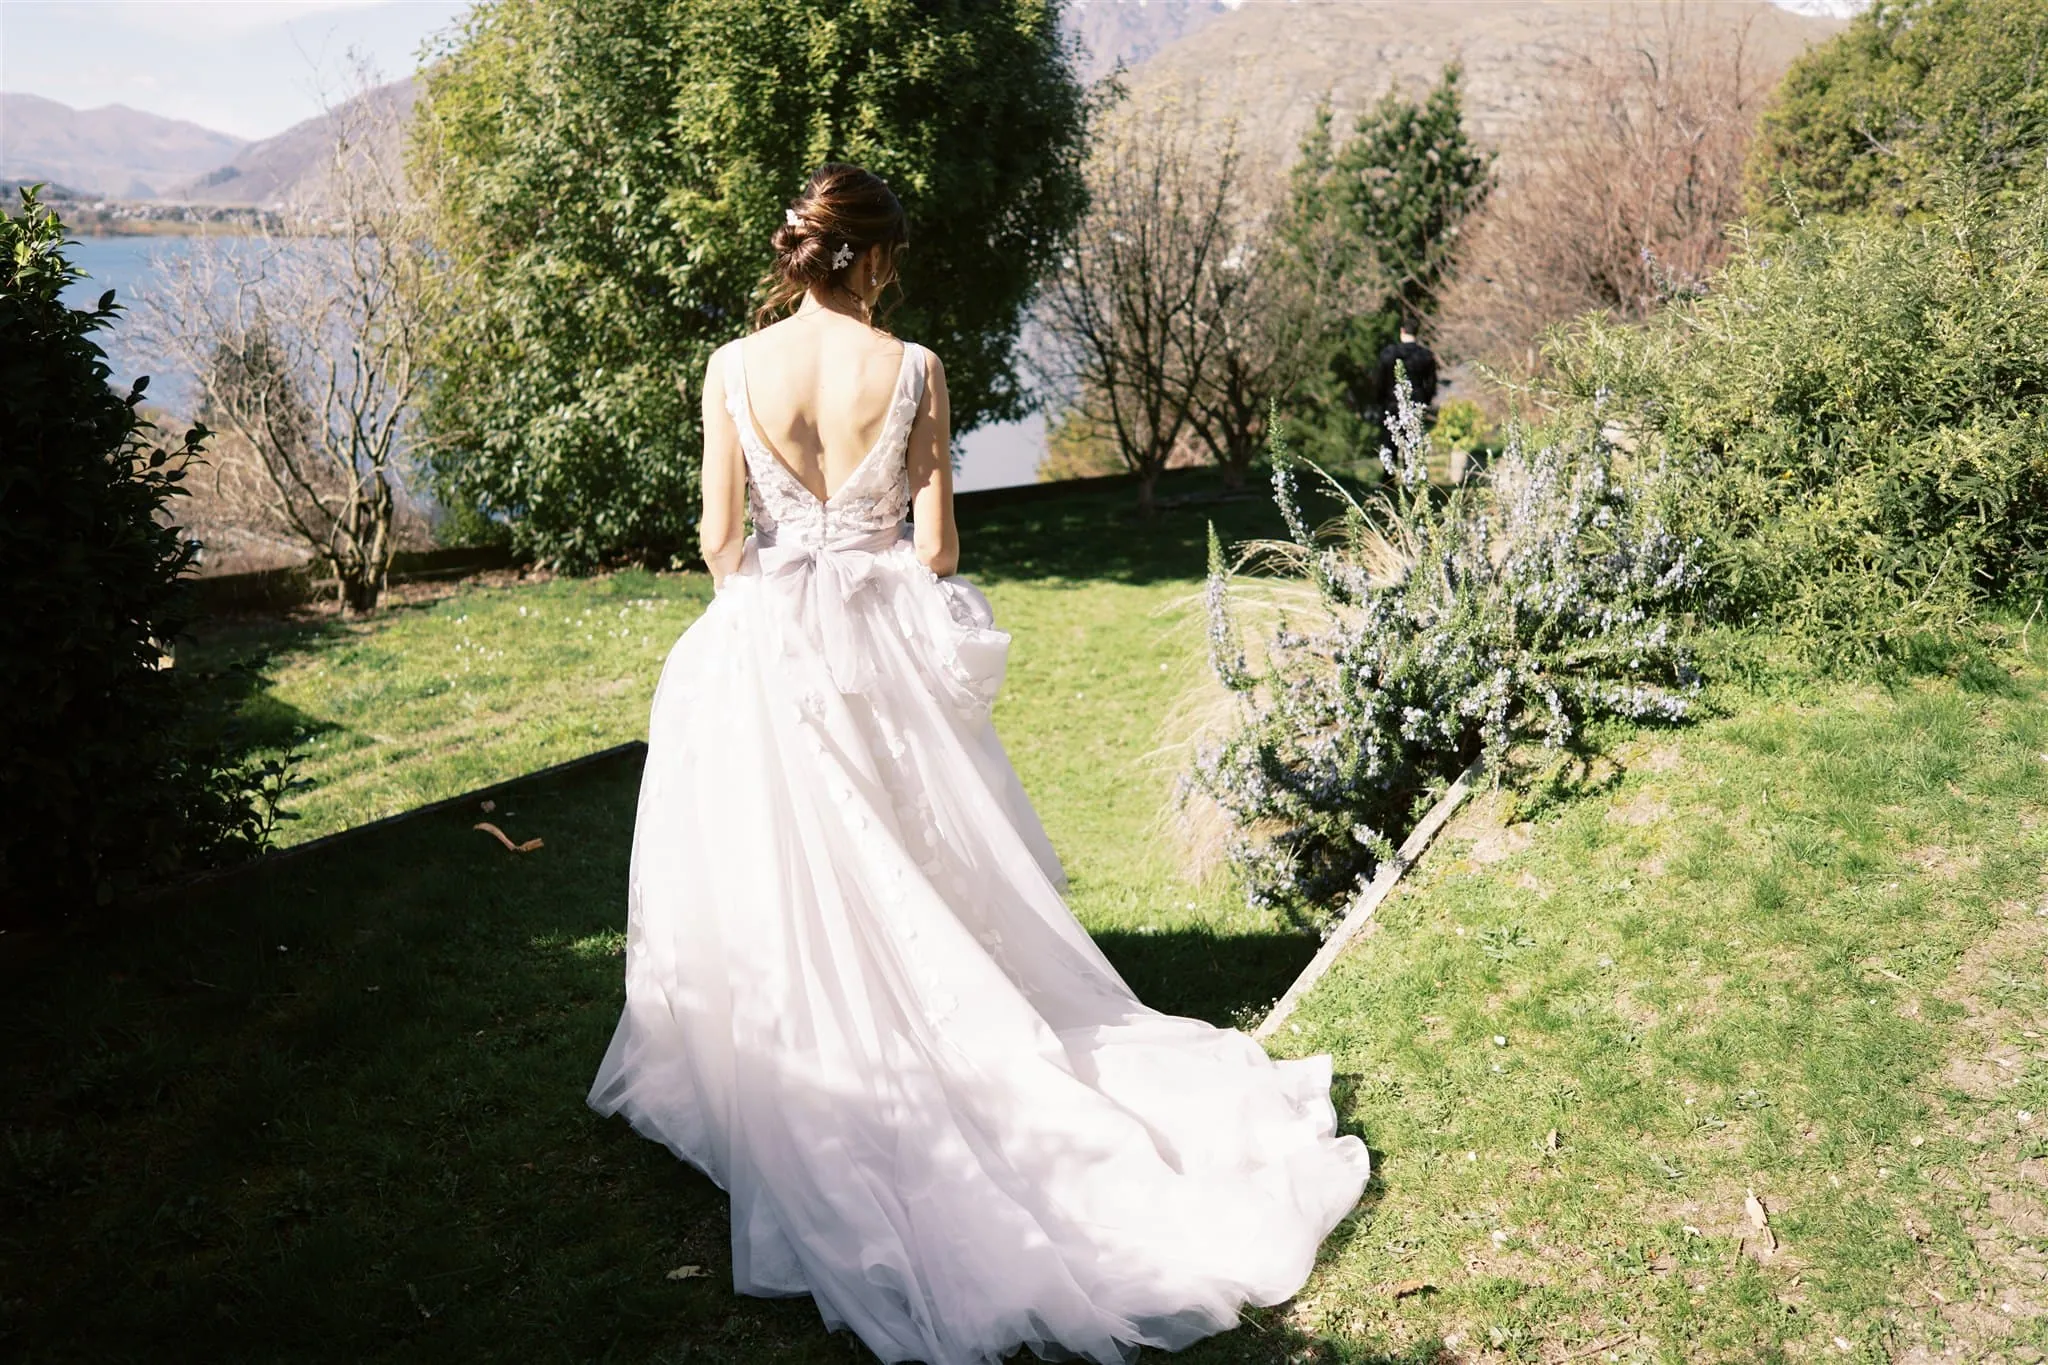 Queenstown New Zealand Elopement Wedding Photographer - A bride in a wedding dress walks down a grassy path during her Queenstown elopement.